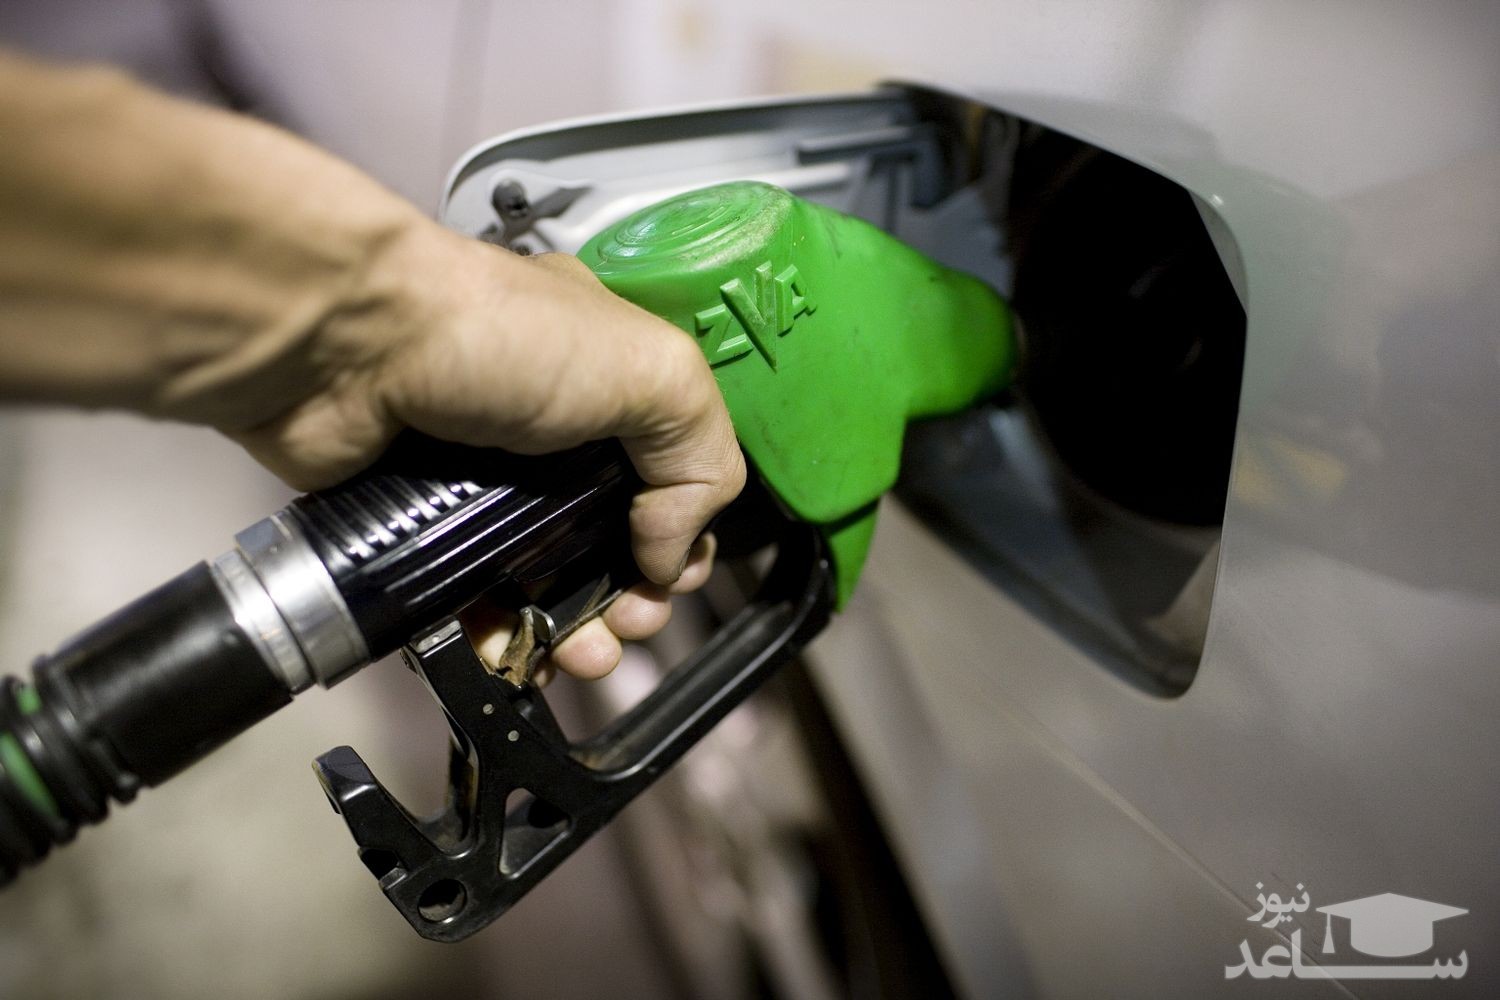 در نخستین روز سال مصرف بنزین ۱۸.۸ درصد رشد کرد/ بیش از ۱۰۰ میلیون لیتر بنزین دود شد